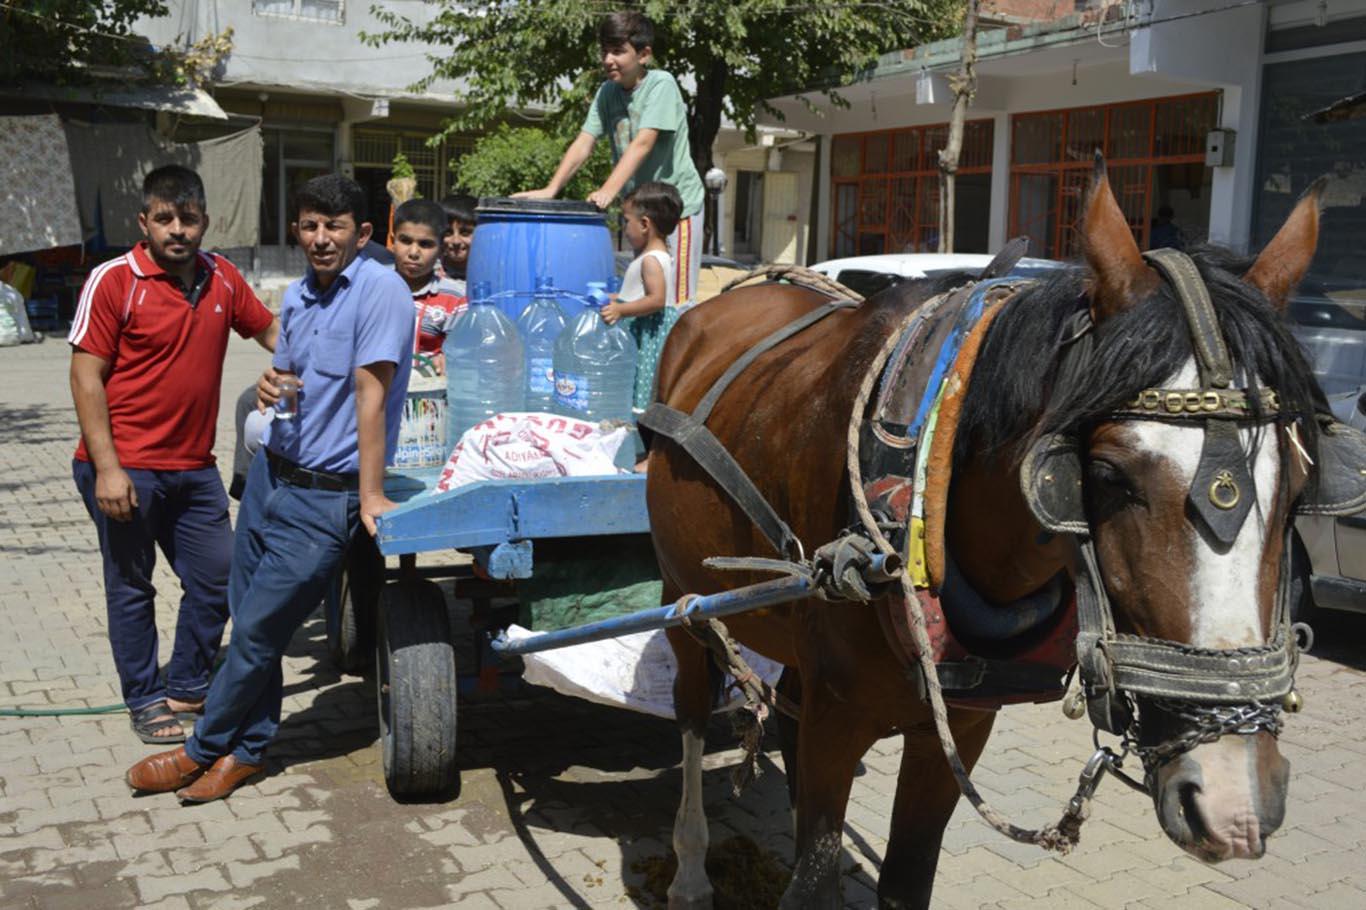 At arabasıyla evlerine içme suyu taşıyorlar